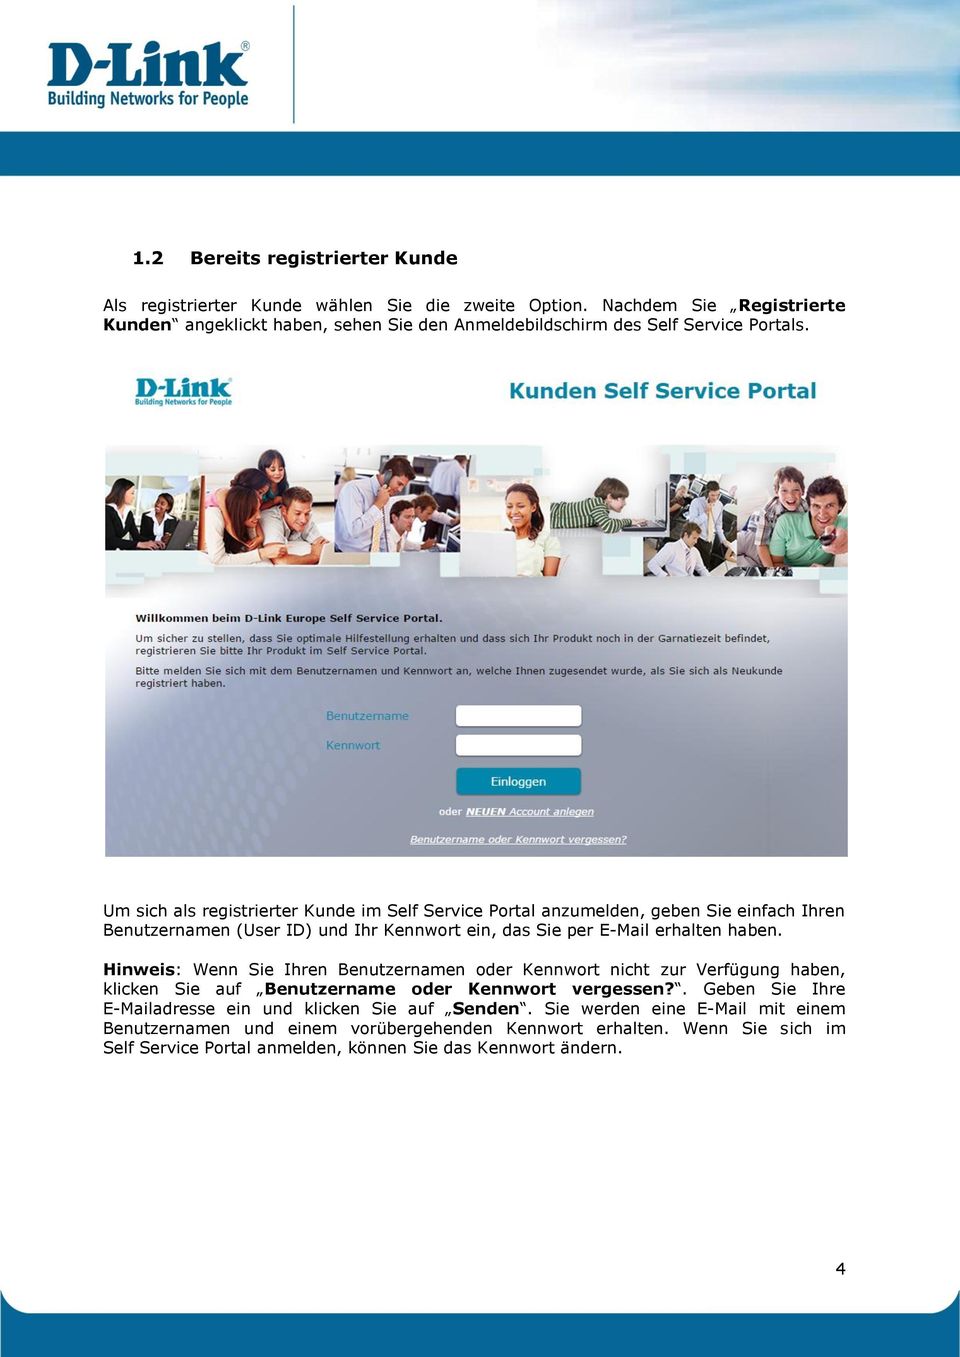 Um sich als registrierter Kunde im Self Service Portal anzumelden, geben Sie einfach Ihren Benutzernamen (User ID) und Ihr Kennwort ein, das Sie per E-Mail erhalten haben.